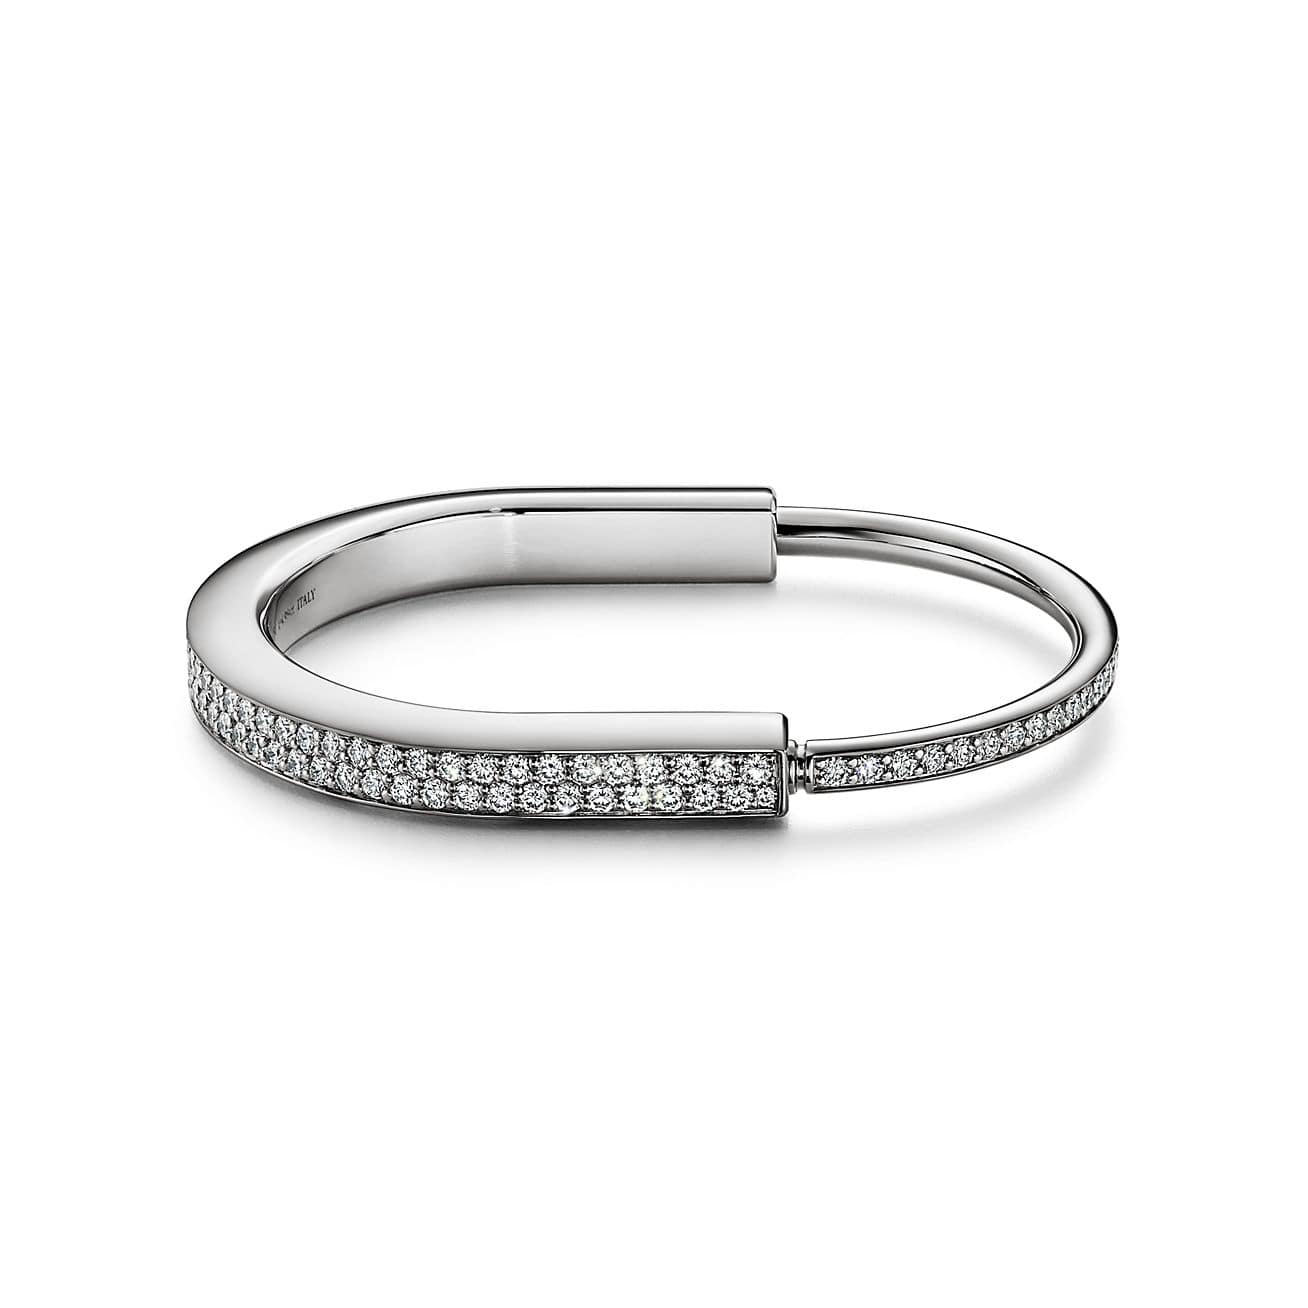 Tiffany & Co. Launches Tiffany Lock Bracelets | Hypebeast